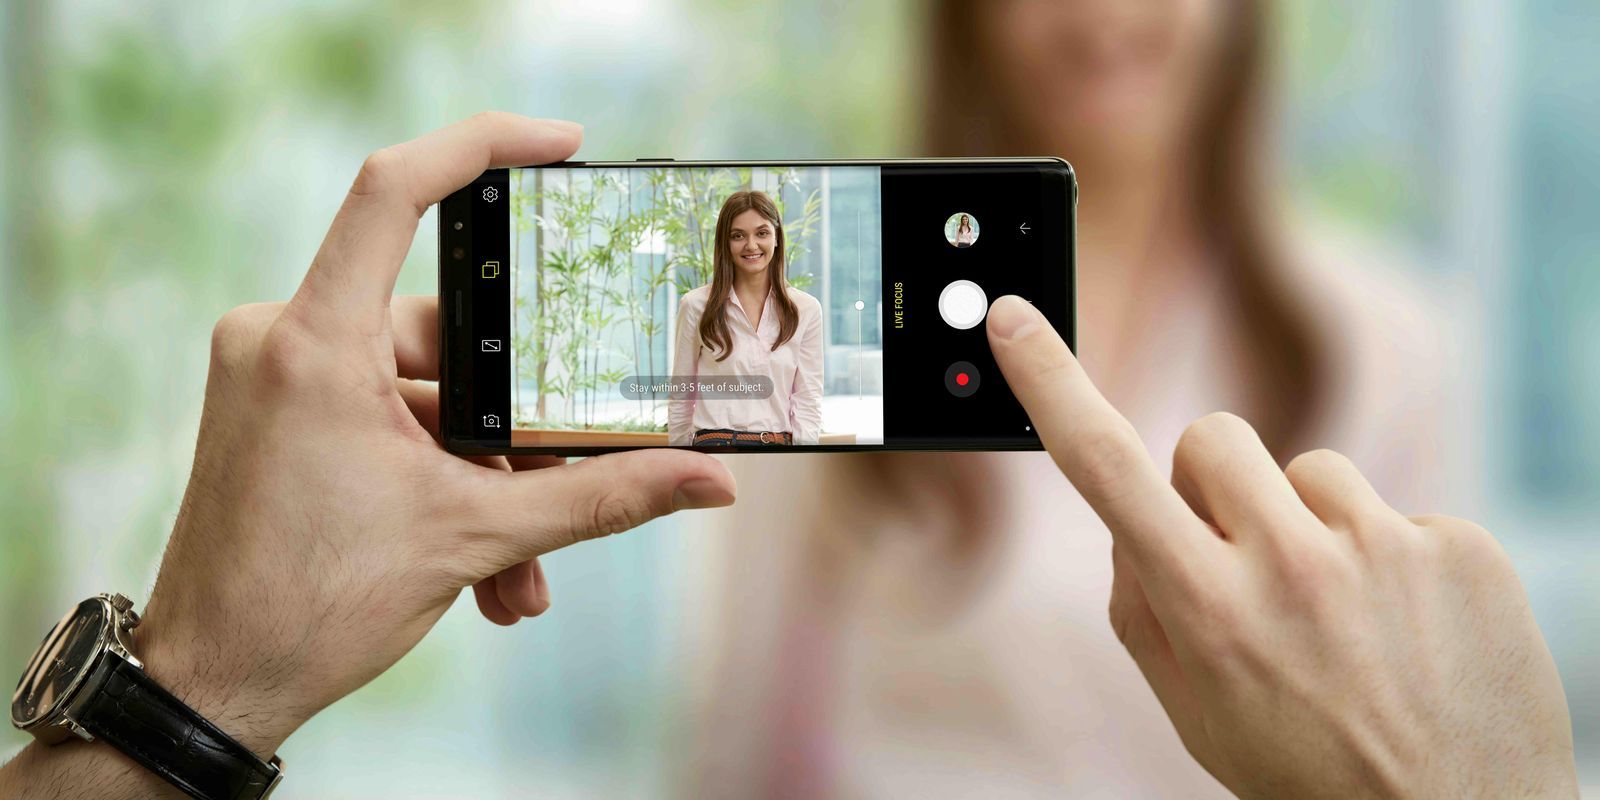 كاميرا Samsung Galaxy Note 9 ... خصائص خفية متميزة عليك معرفتها